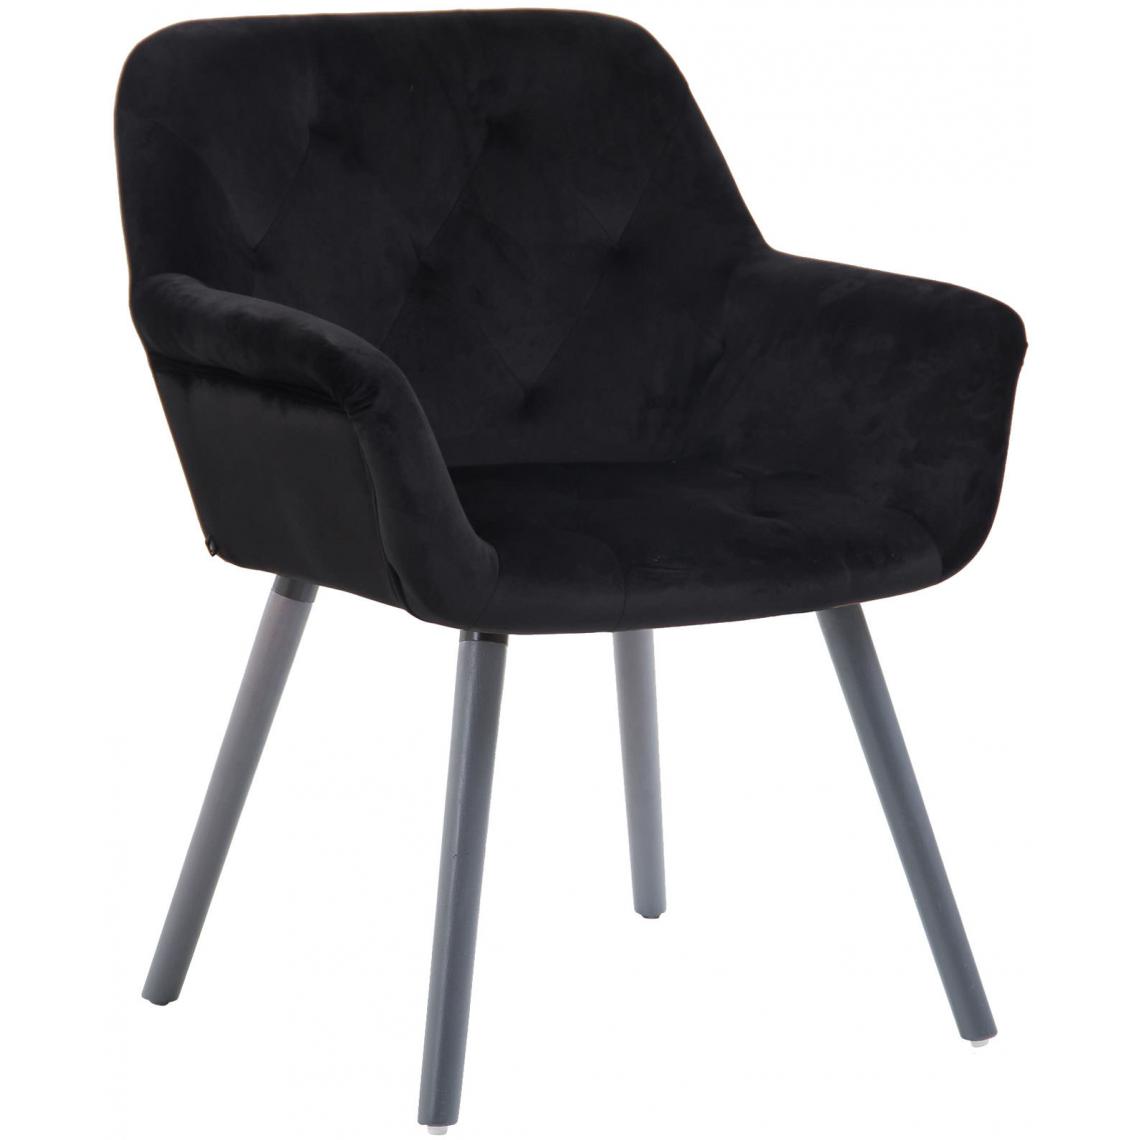 Icaverne - Splendide Chaise de salle à manger selection Khartoum velours gris couleur noir - Chaises